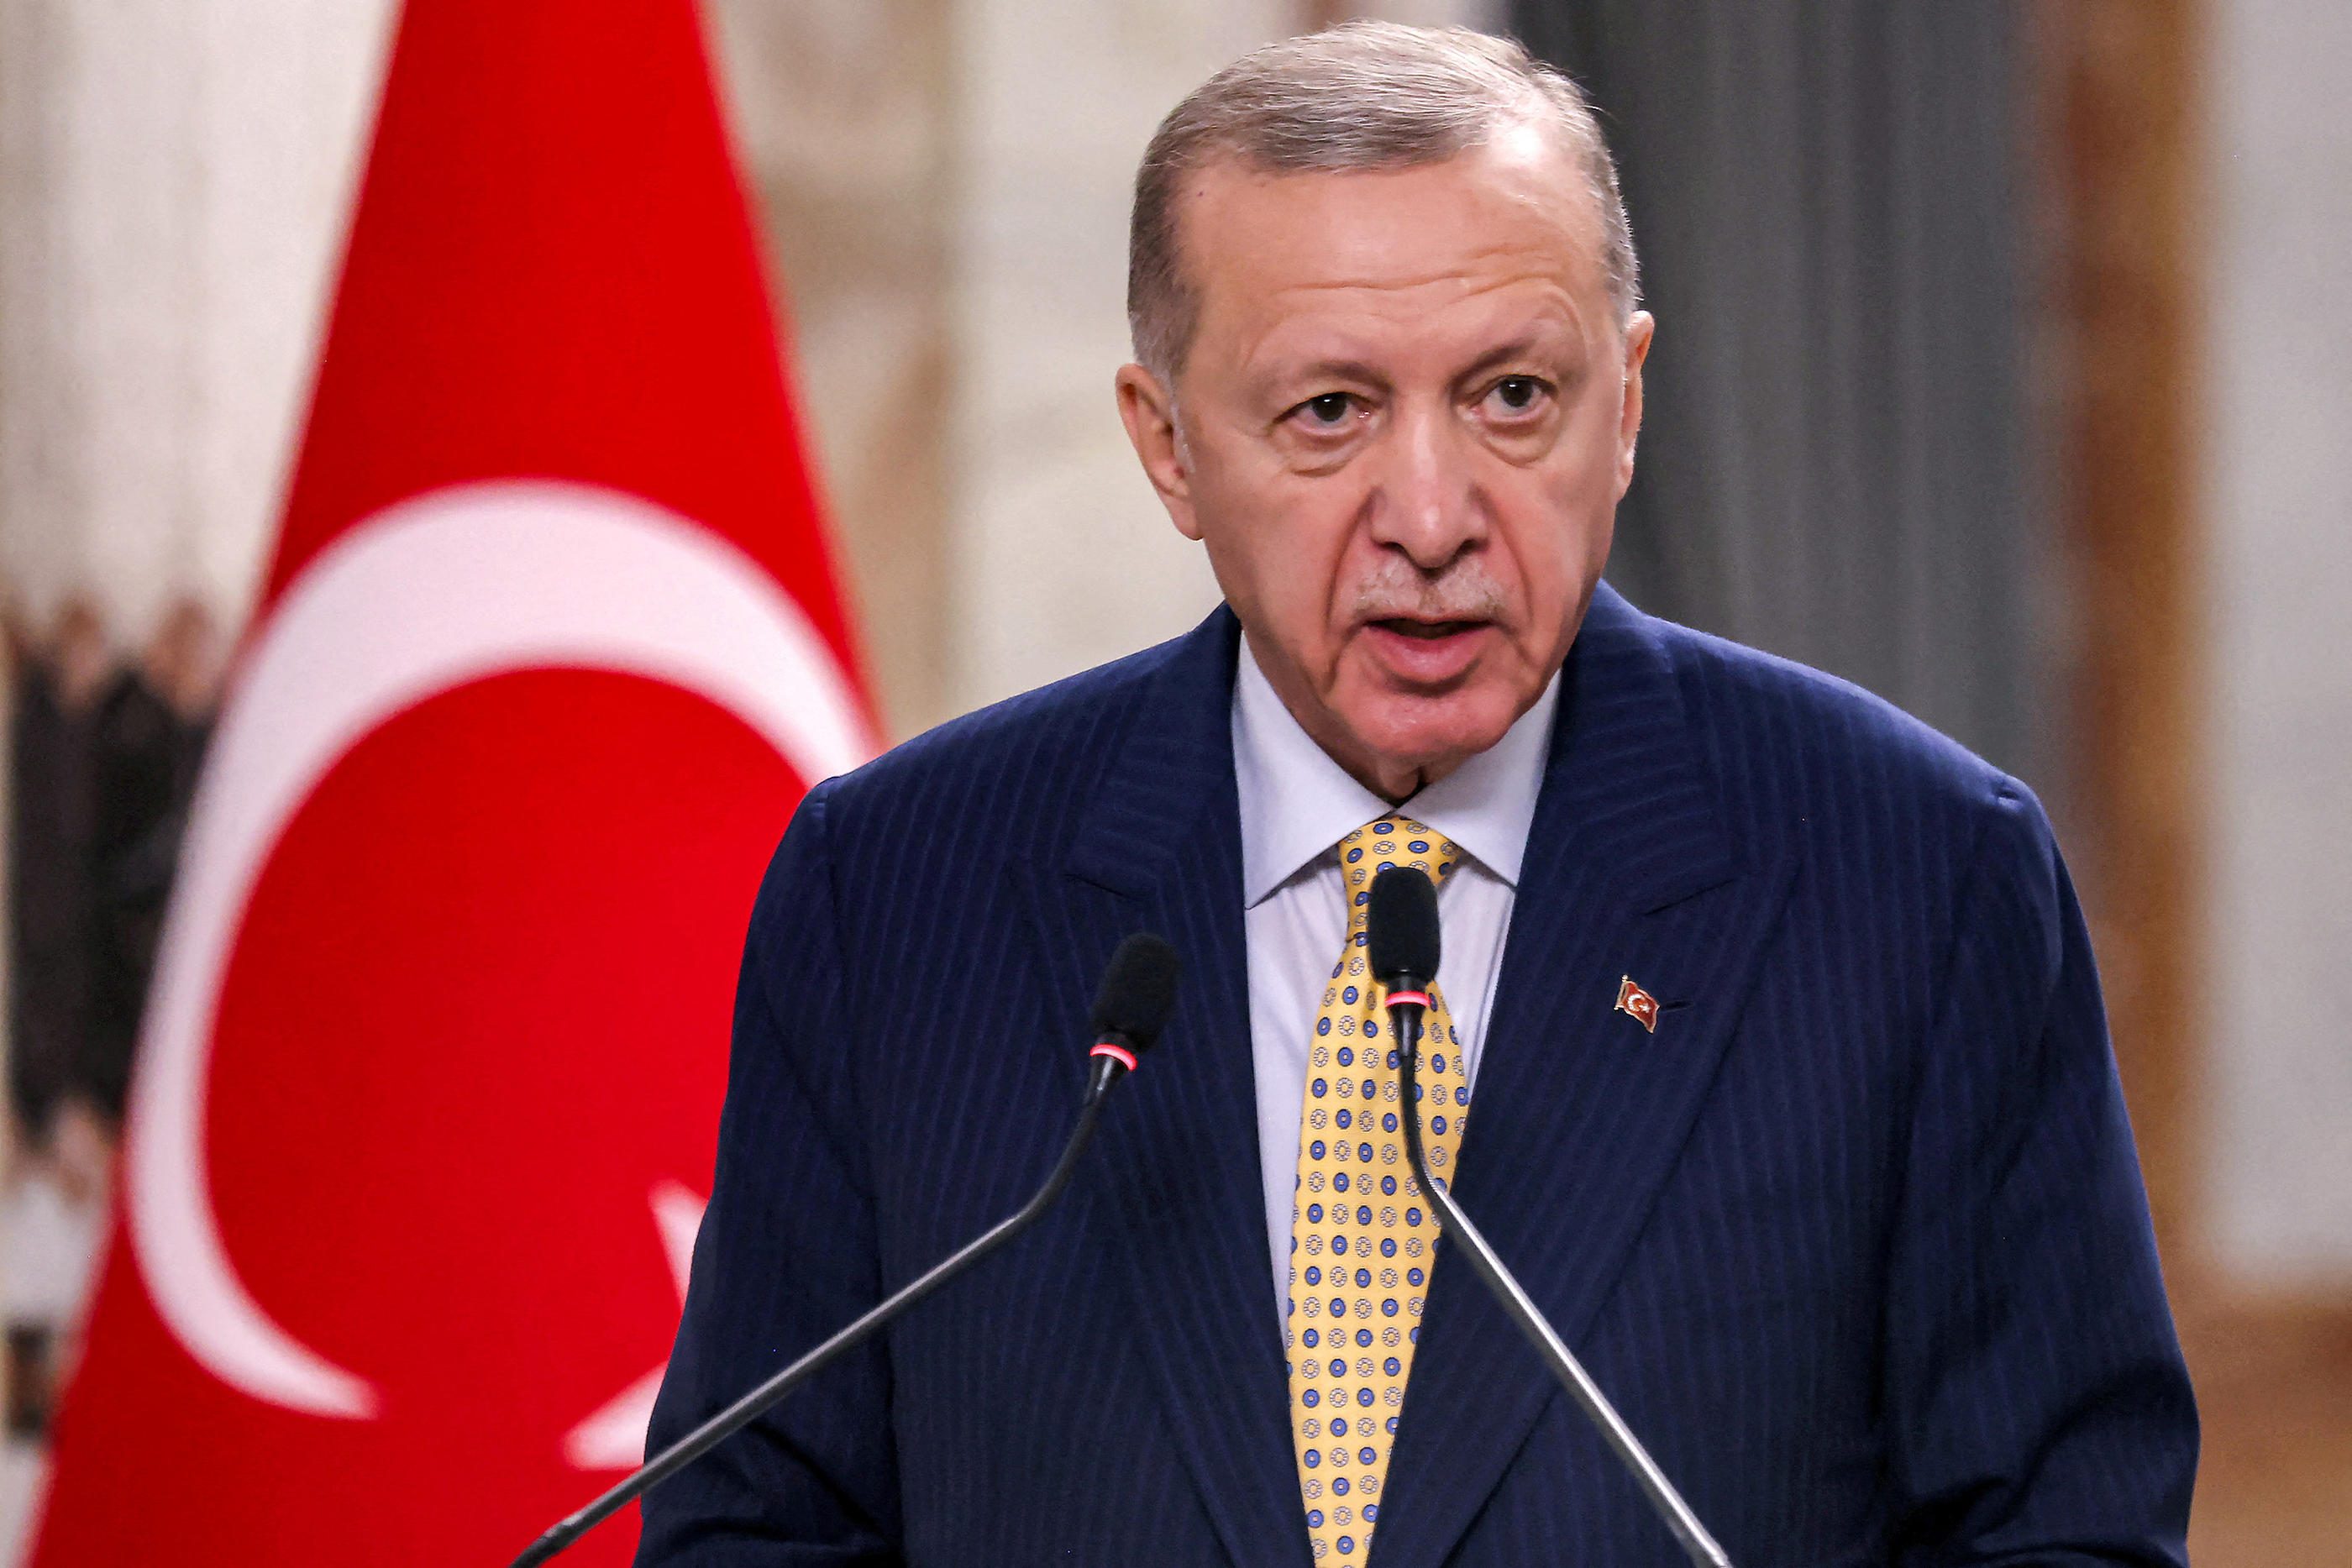 Le parti Justice et Développement au pouvoir, dont fait partie Recep Tayyip Erdogan, est devenu moins tolérant à l’égard des droits LGBTQ ces dernières années. Reuters/Ahmad Al-Rubaye